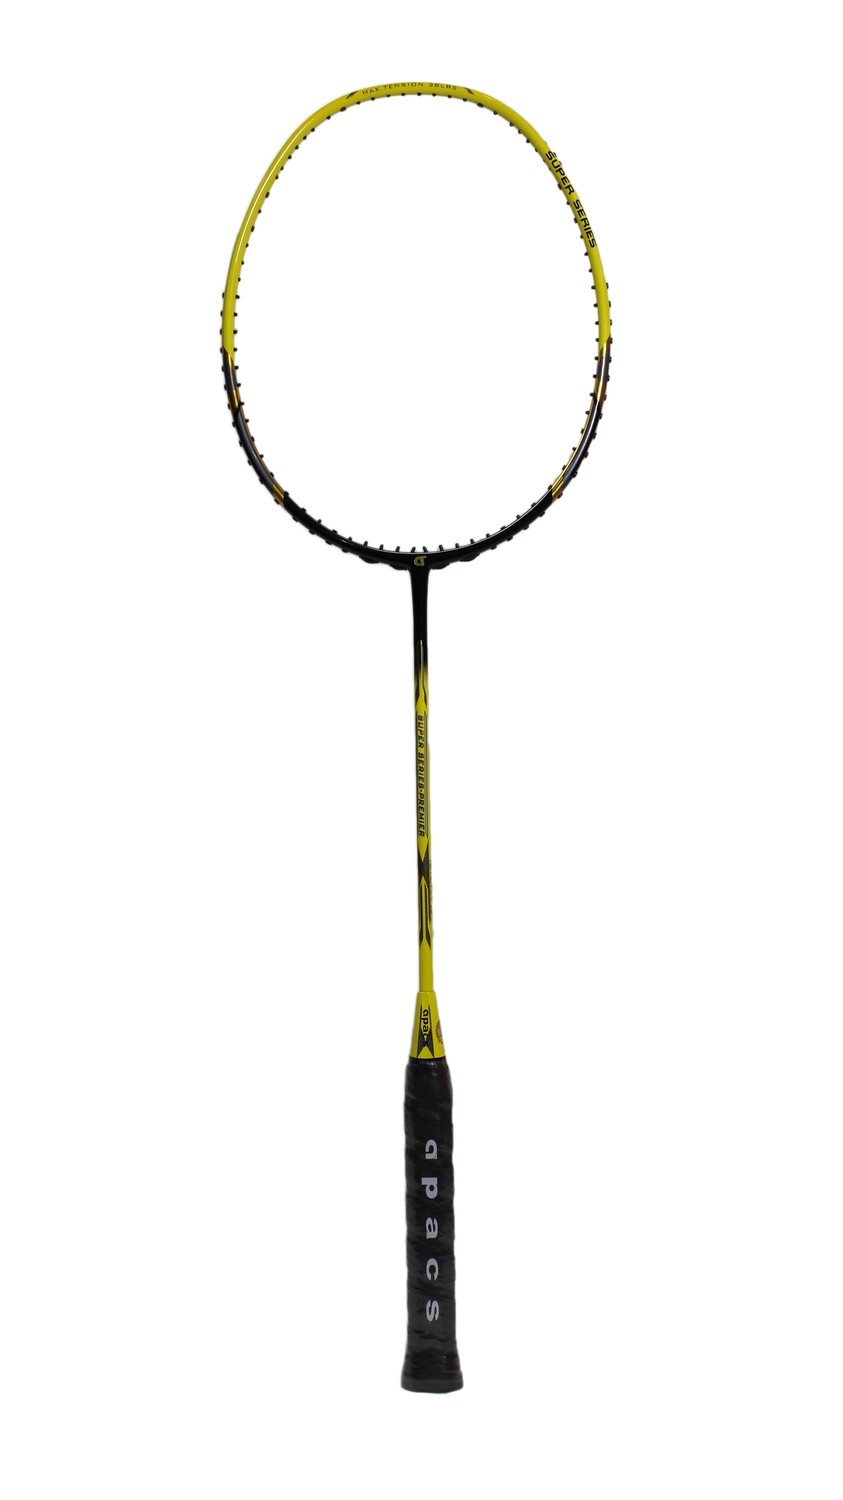 Apacs Super Series Premier Badminton Racquet